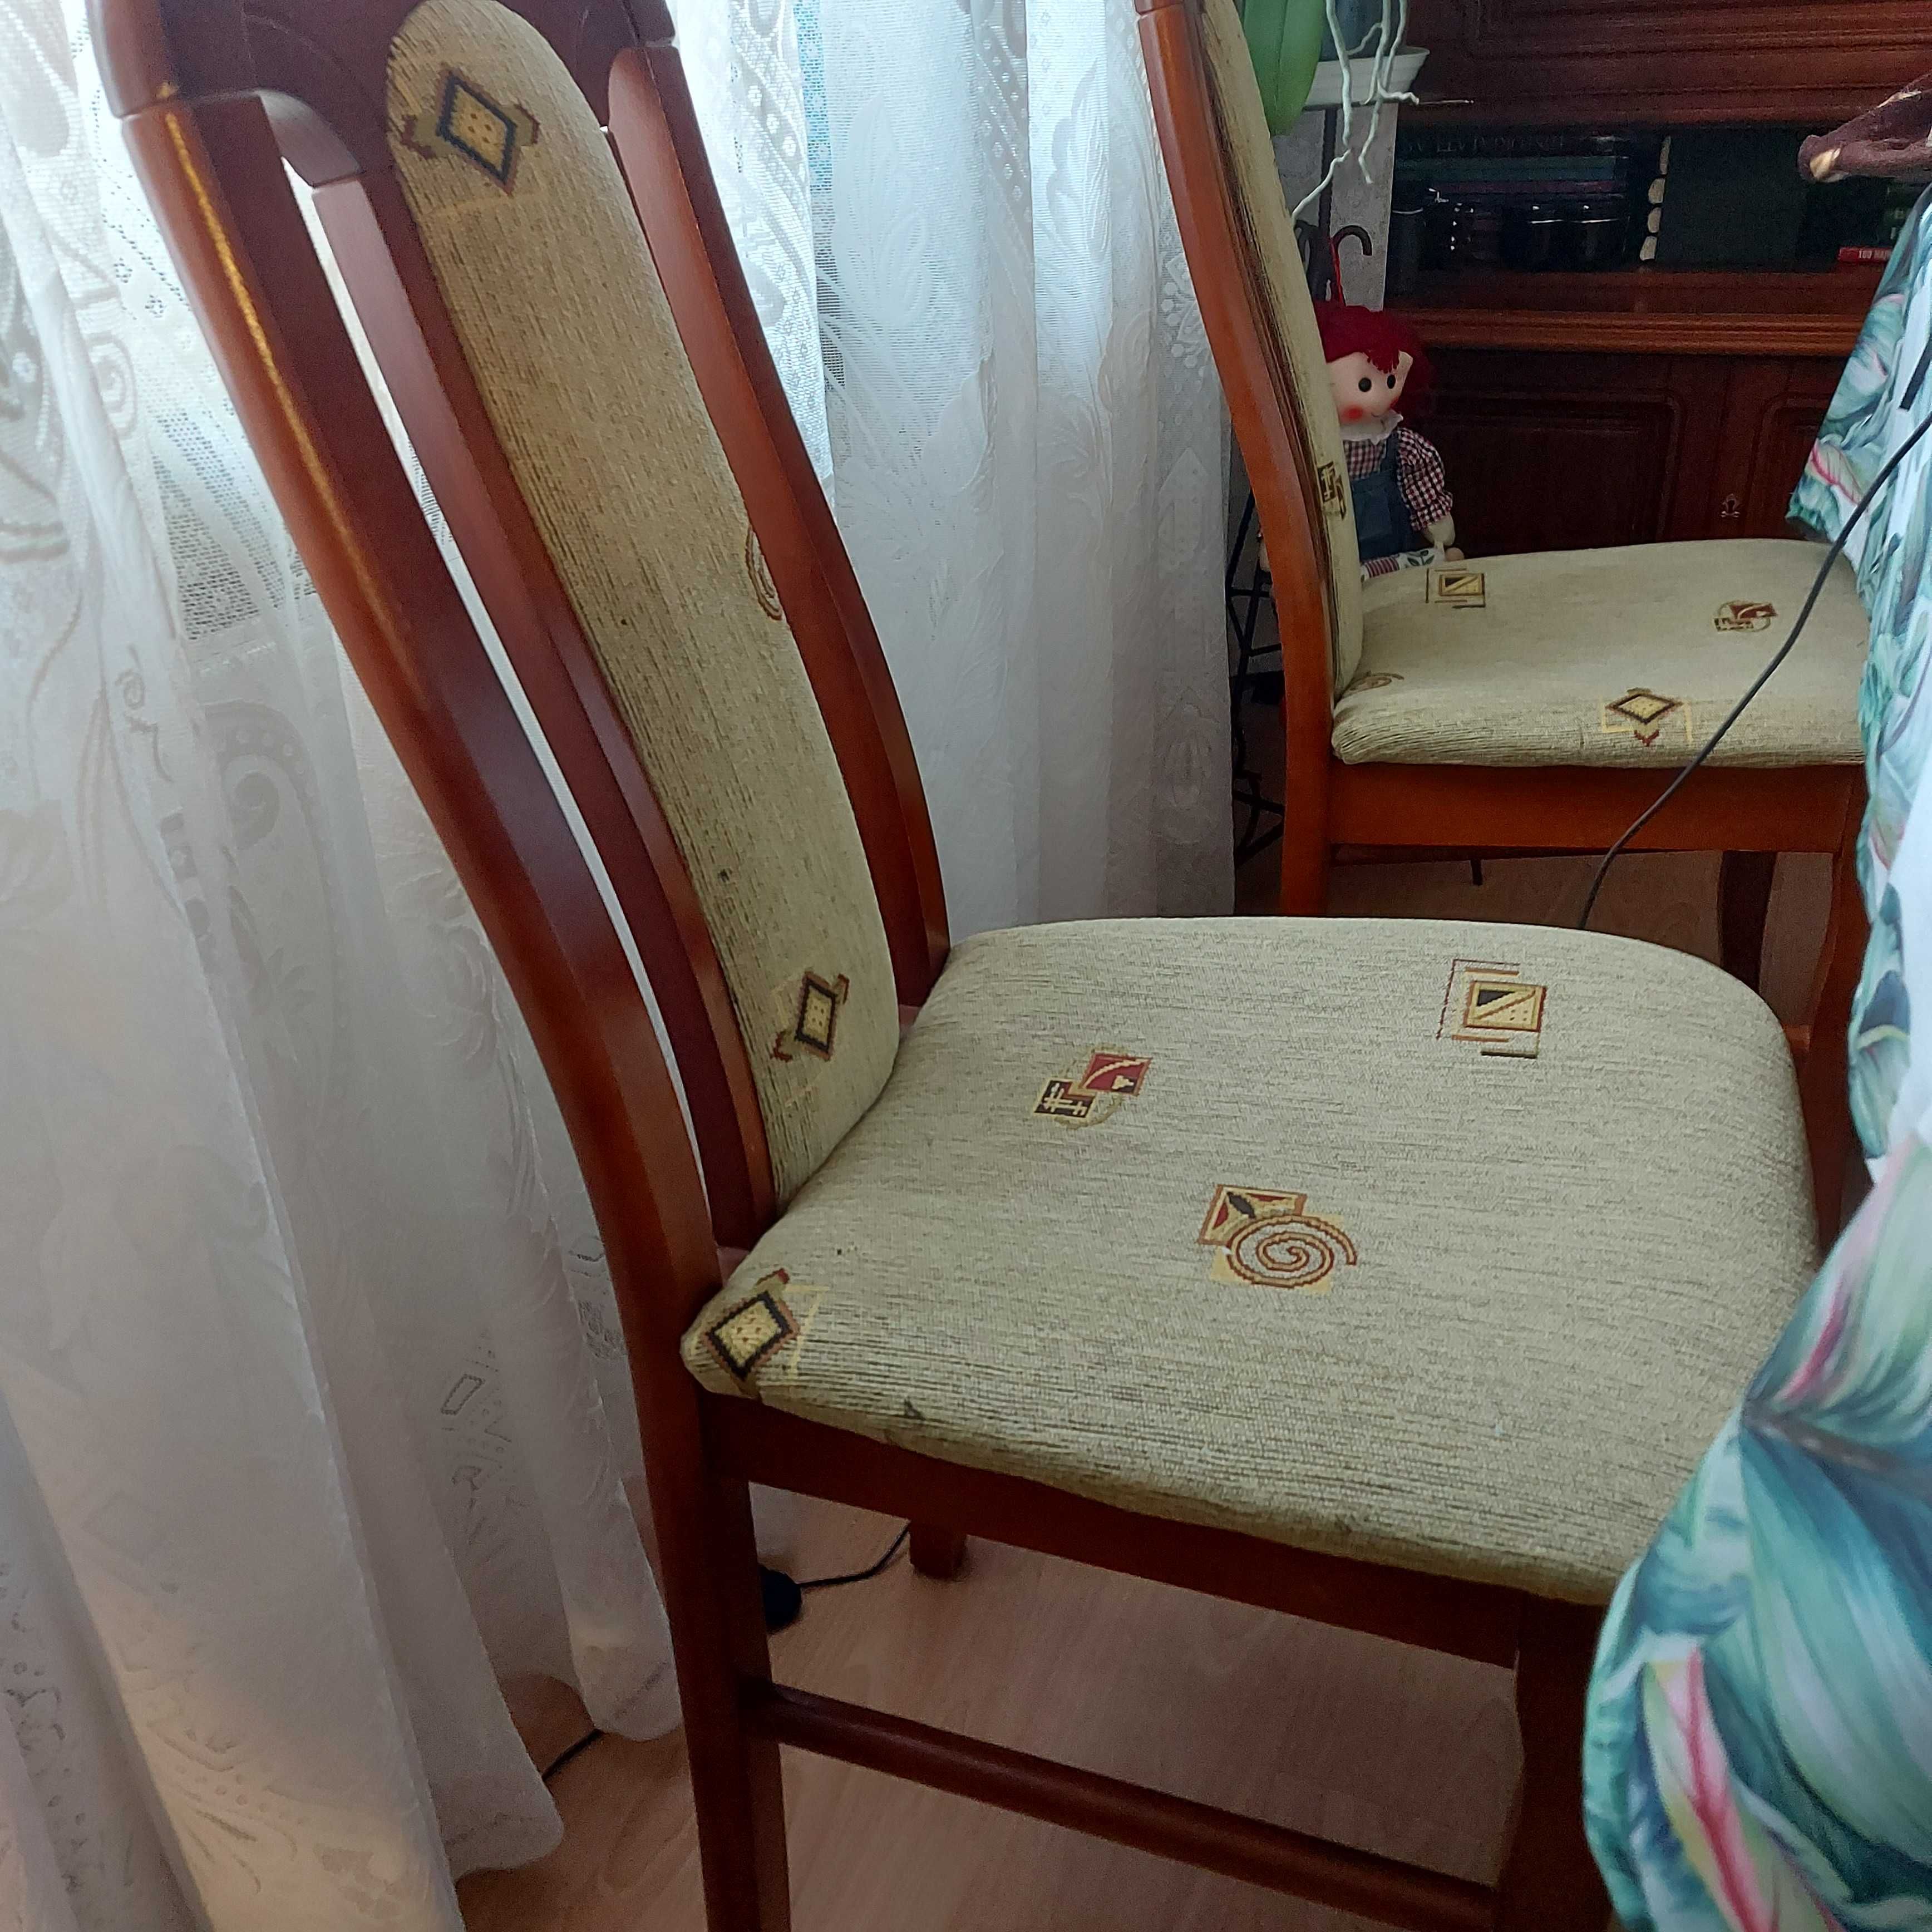 stół rozkładany plus 6 krzeseł